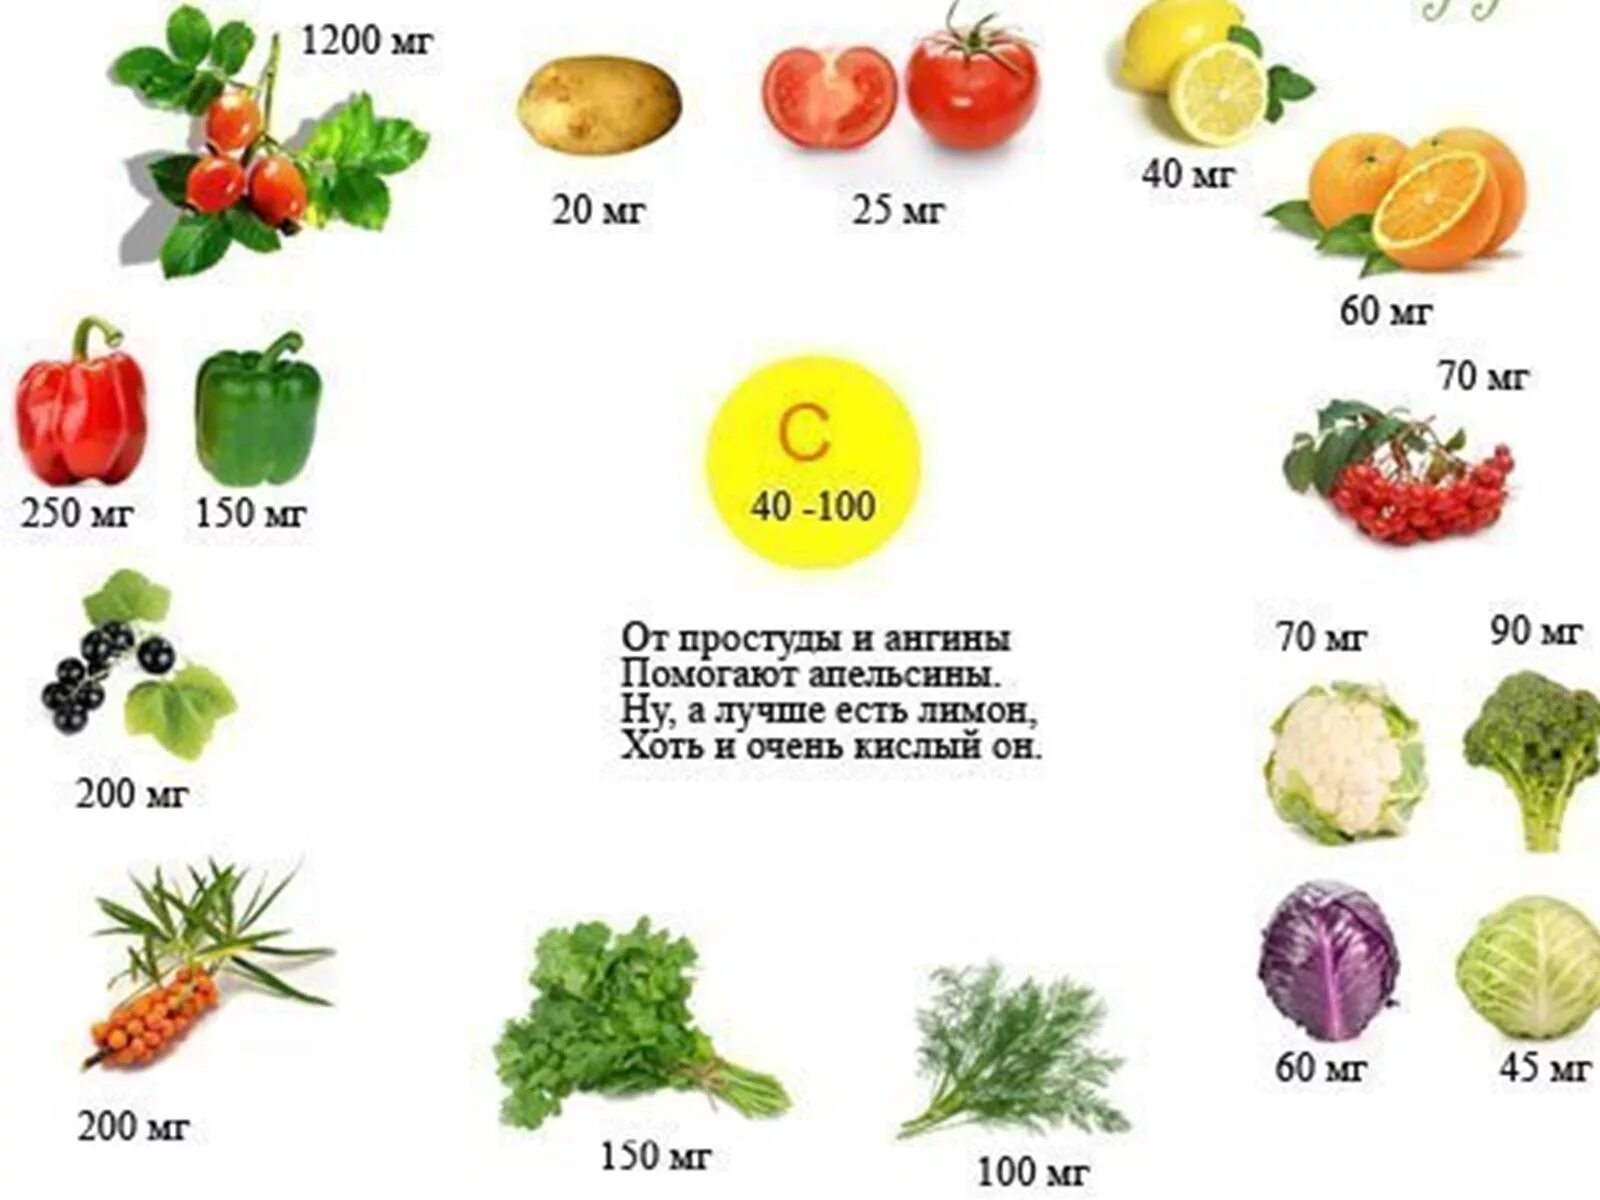 Витамин с в продуктах и фруктах. В каких овощах и фруктах содержится витамин а. Фрукты с высоким содержанием витамина с. Содержание витаминов в овощах и фруктах. В каких продуктах содержится витамин с в большом количестве.